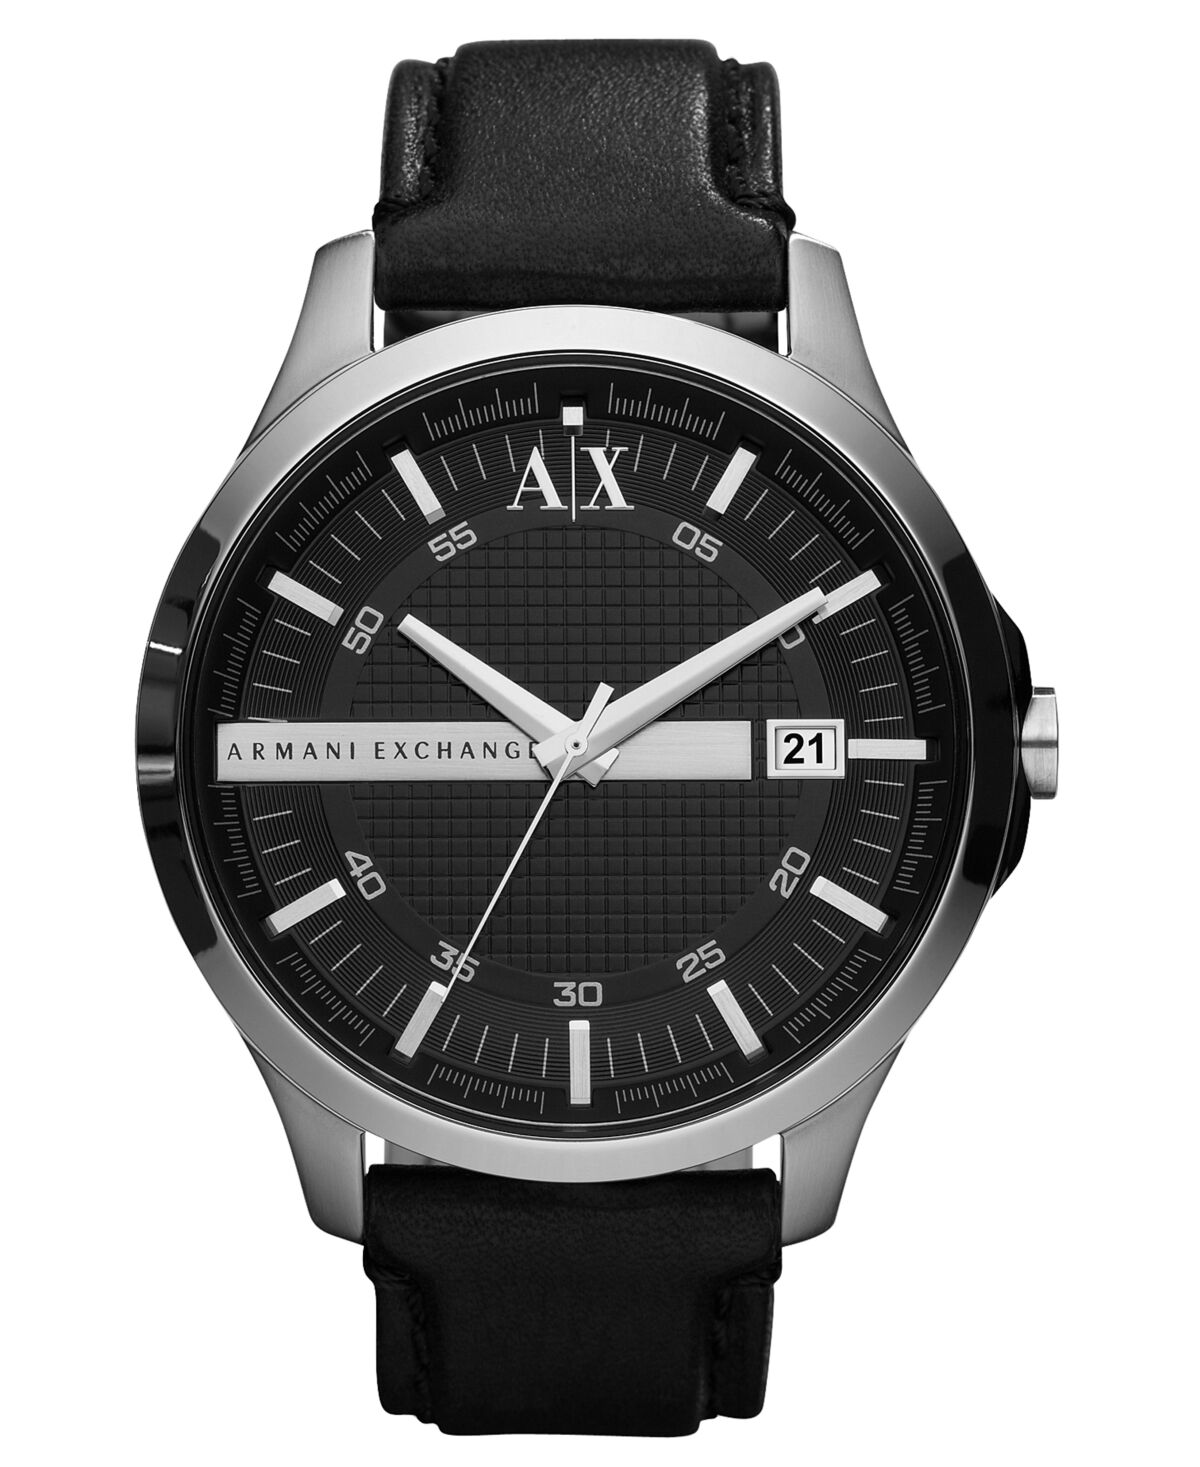 A|x Armani Exchange A X Armani Exchange Watch, Men's Black Leather Strap 46mm AX2101 - Black